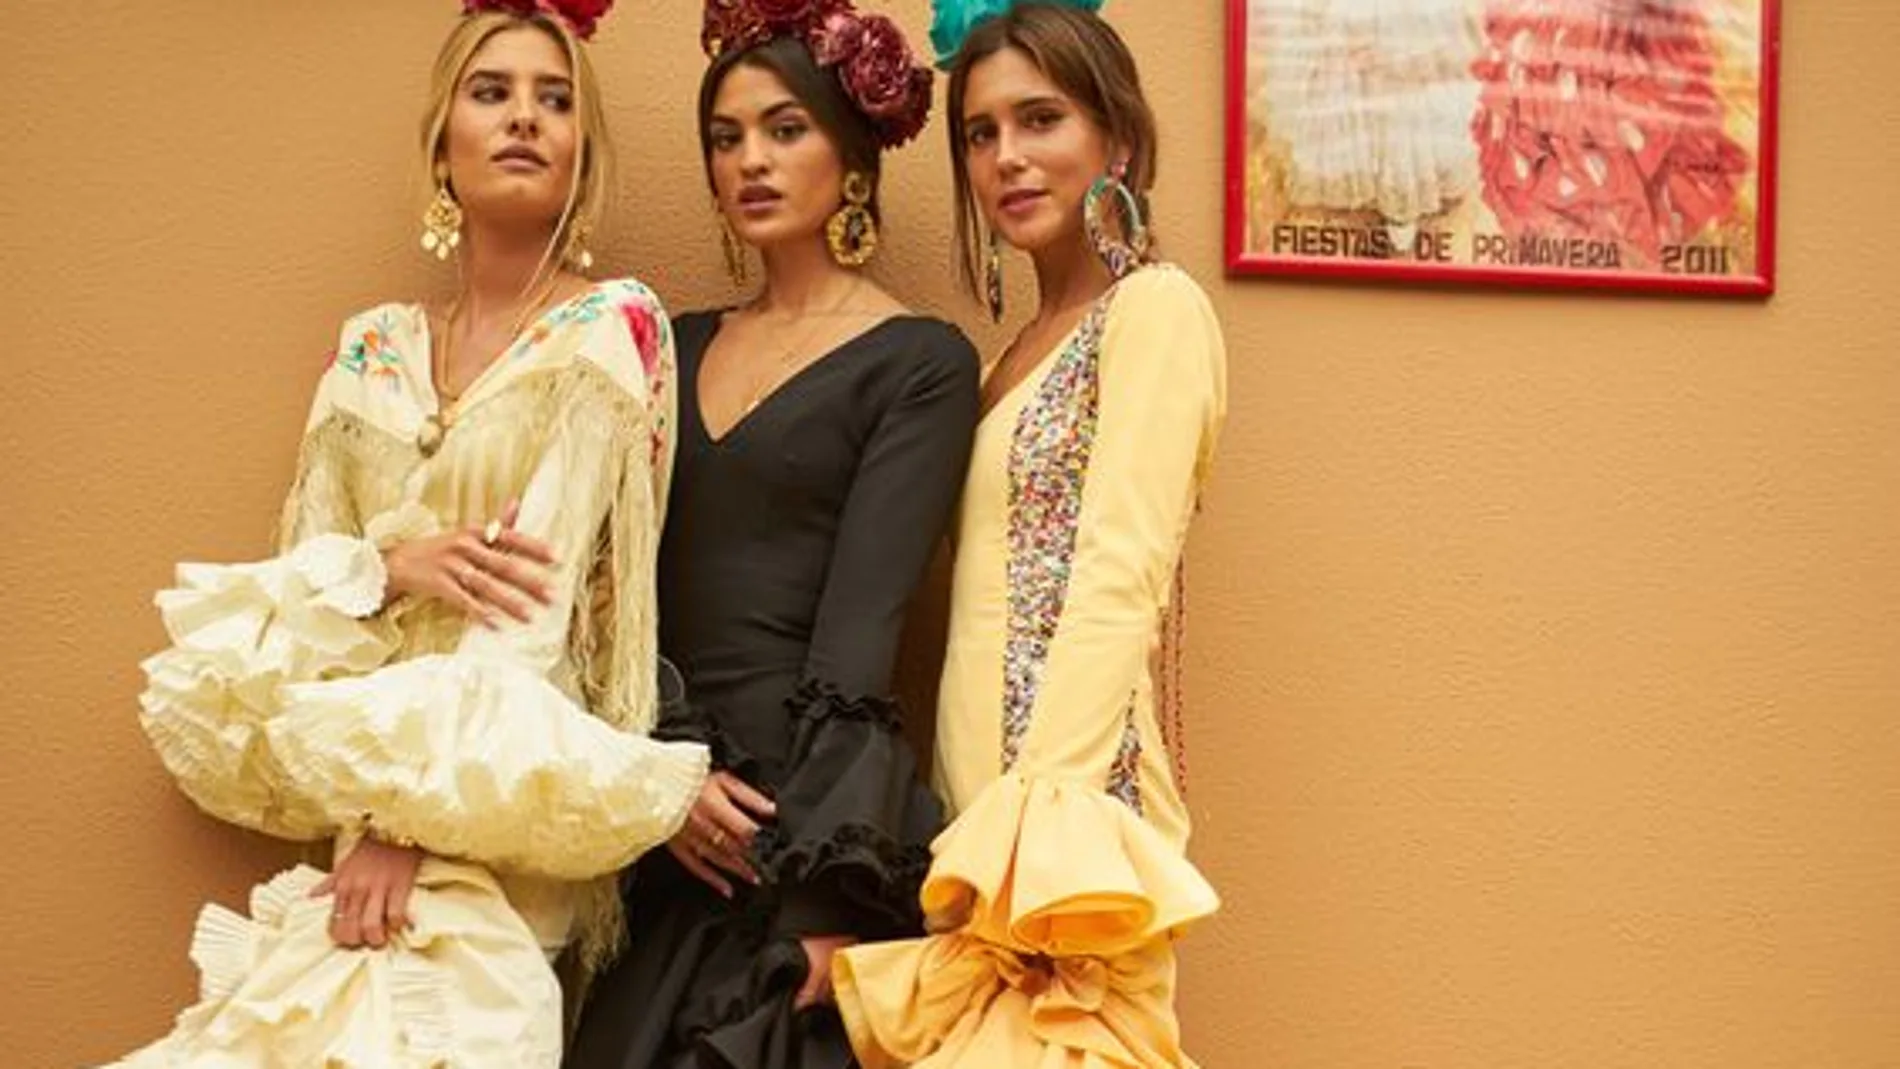 Si piensas pasarte por la Feria de Abril, estos complementos te ayudarán a  conseguir un look flamenco sin ir vestida de gitana